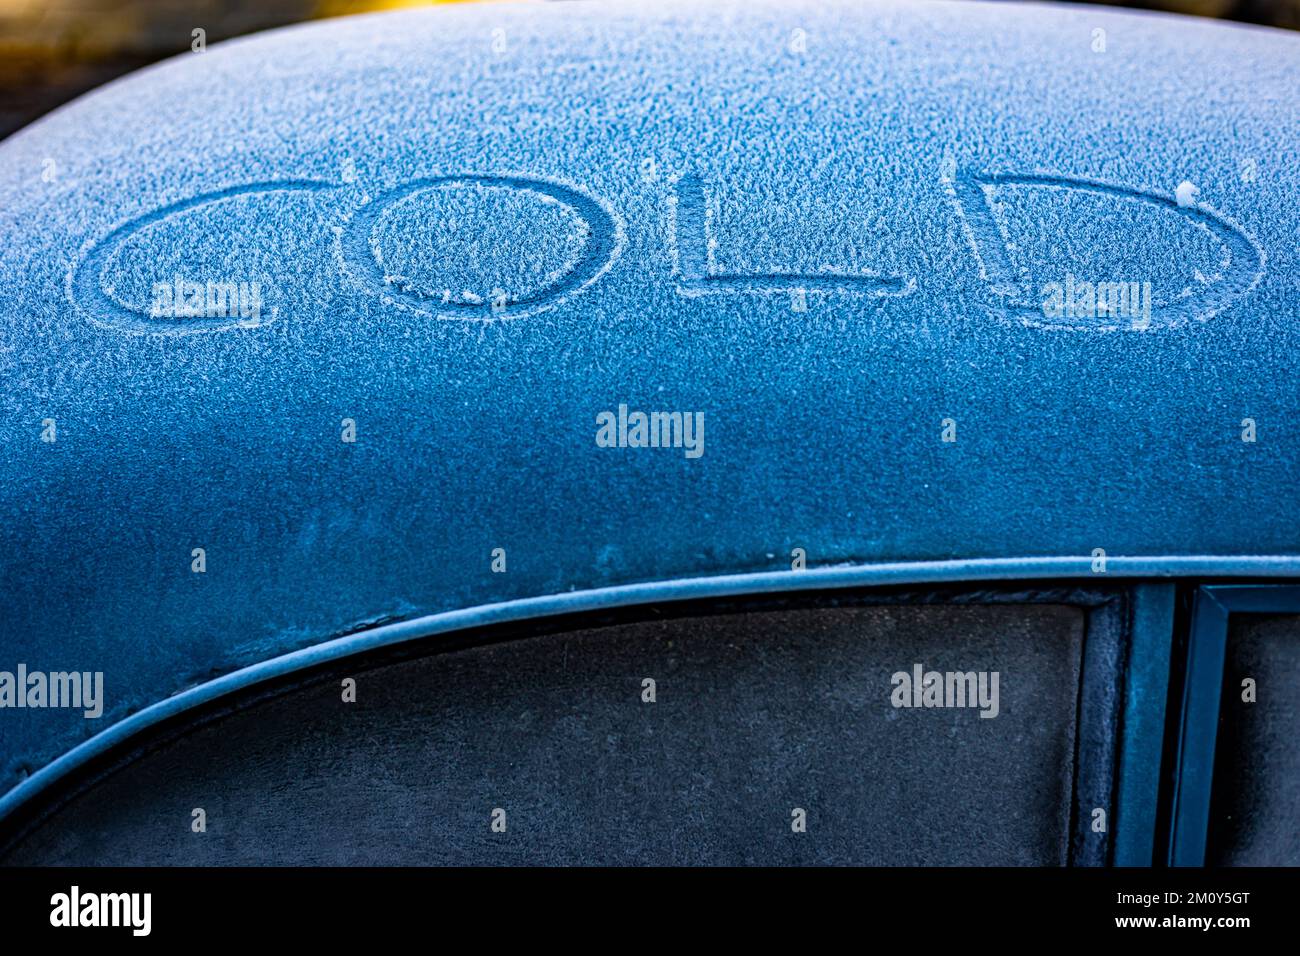 Signe froid écrit sur le dessus d'une vieille voiture d'Austin.Une scène d'hiver où les températures sont au point de congélation et amèrement froid.la couleur bleue ajoute le drame Banque D'Images